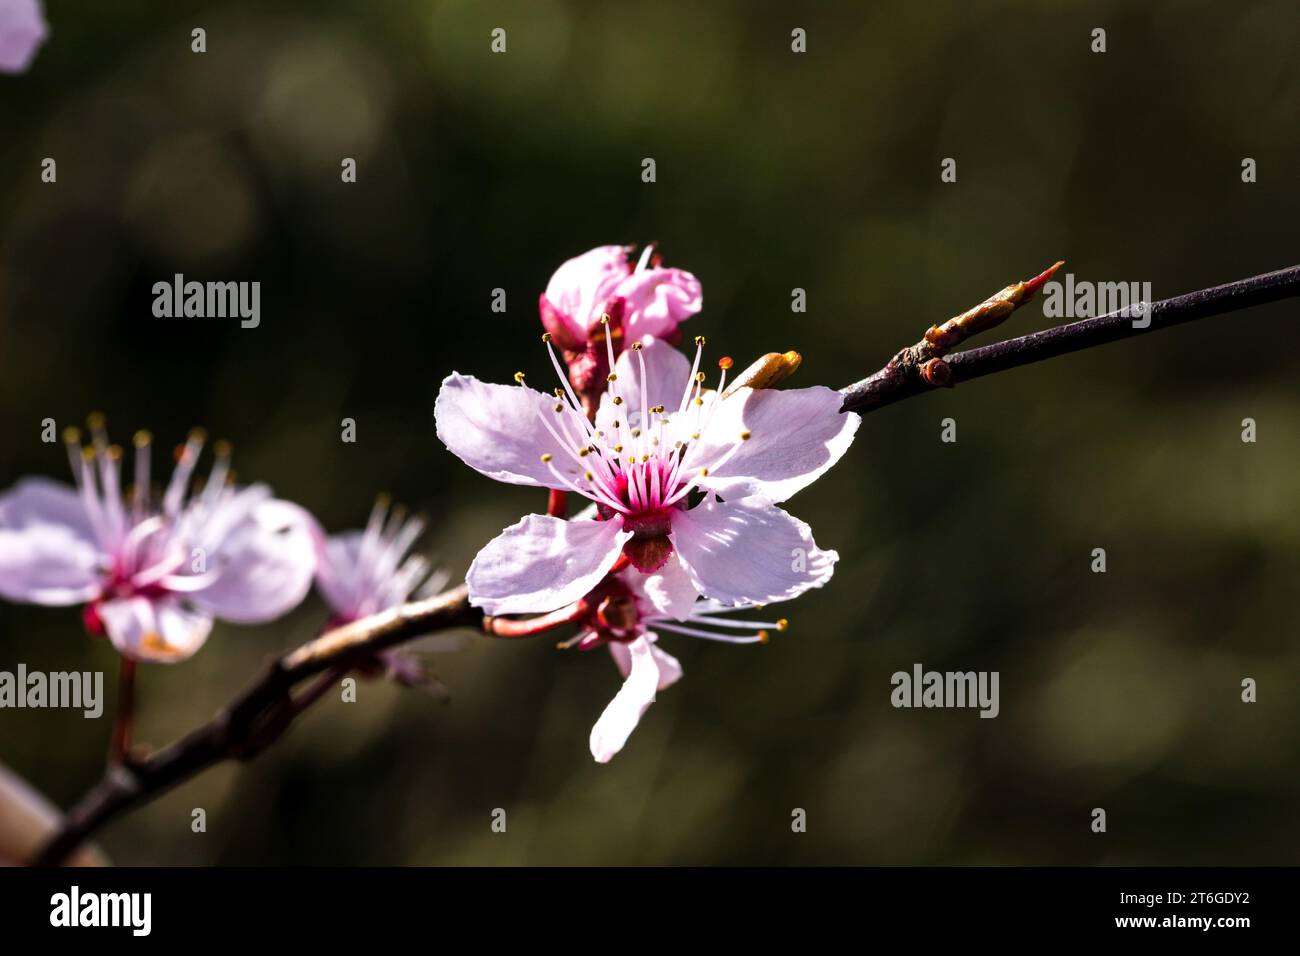 Eine blühende Blutpflaume (Prunus cerasifera) in der Makro Aufnahme Stock Photo